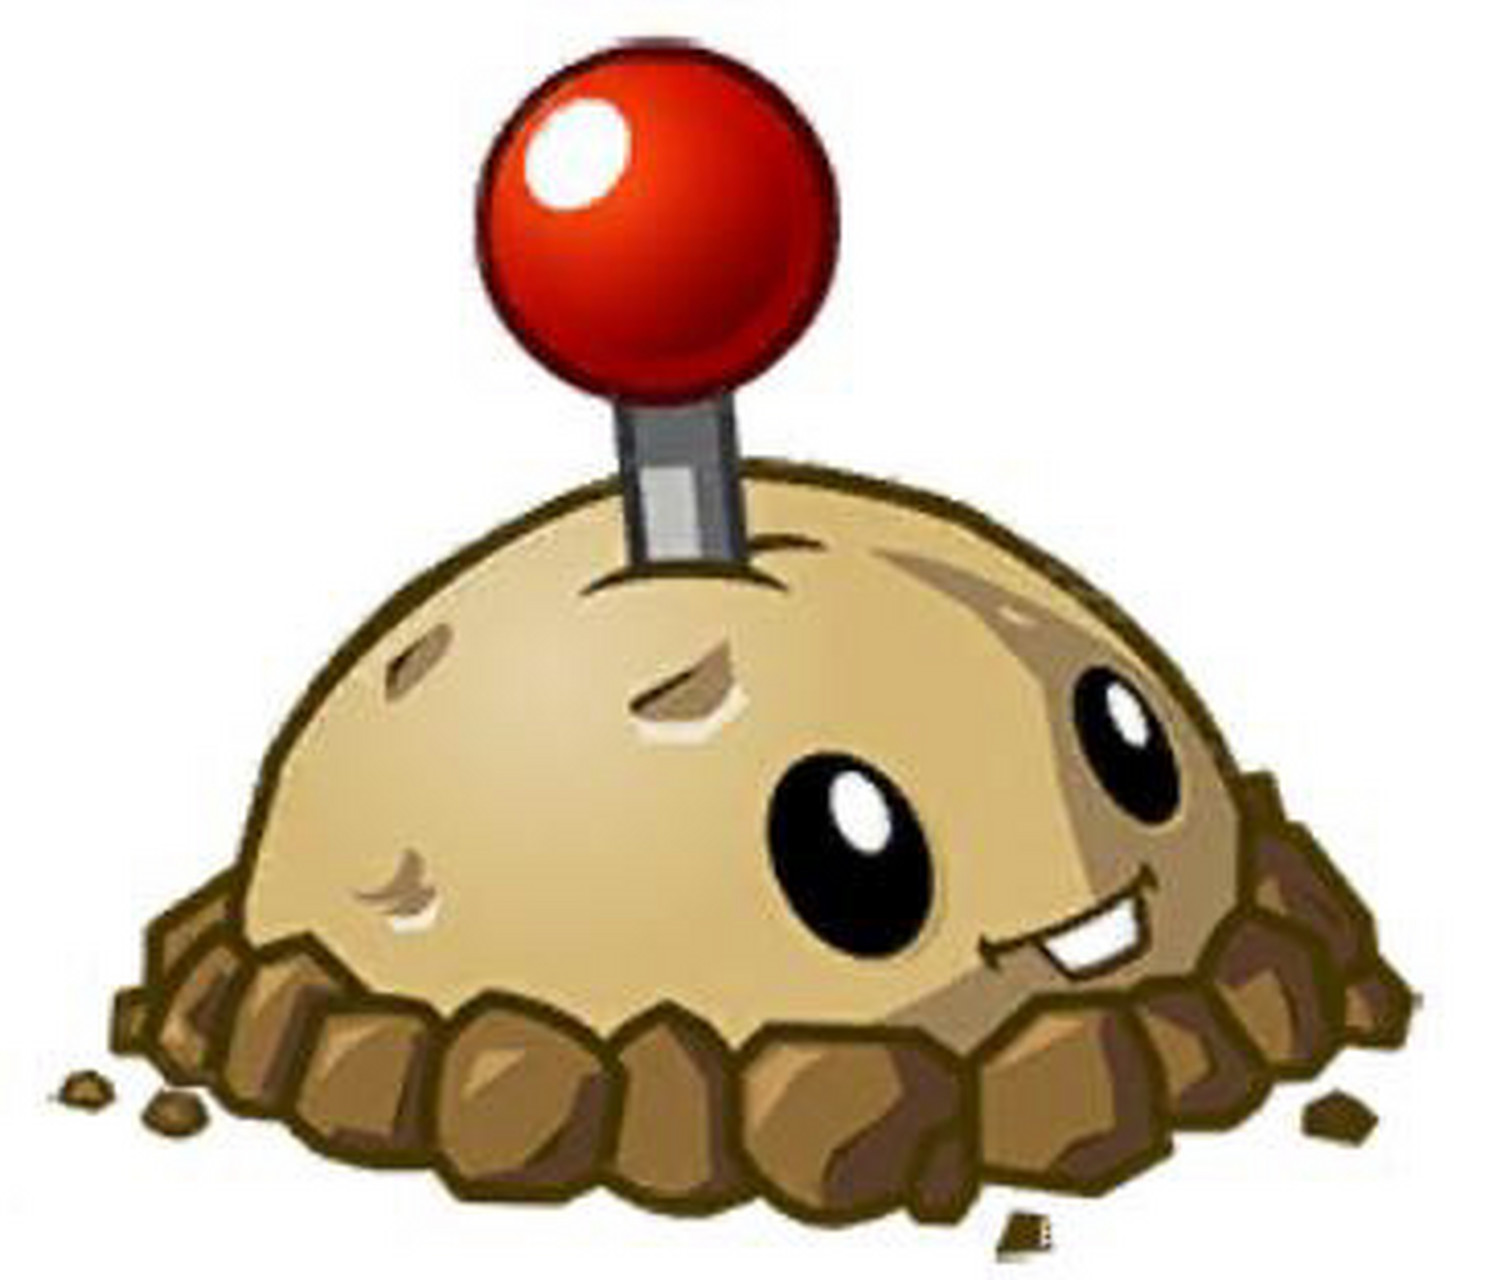 土豆地雷:植物大战僵尸中每个系列都有的植物.阳光25,与自爆僵尸相近.